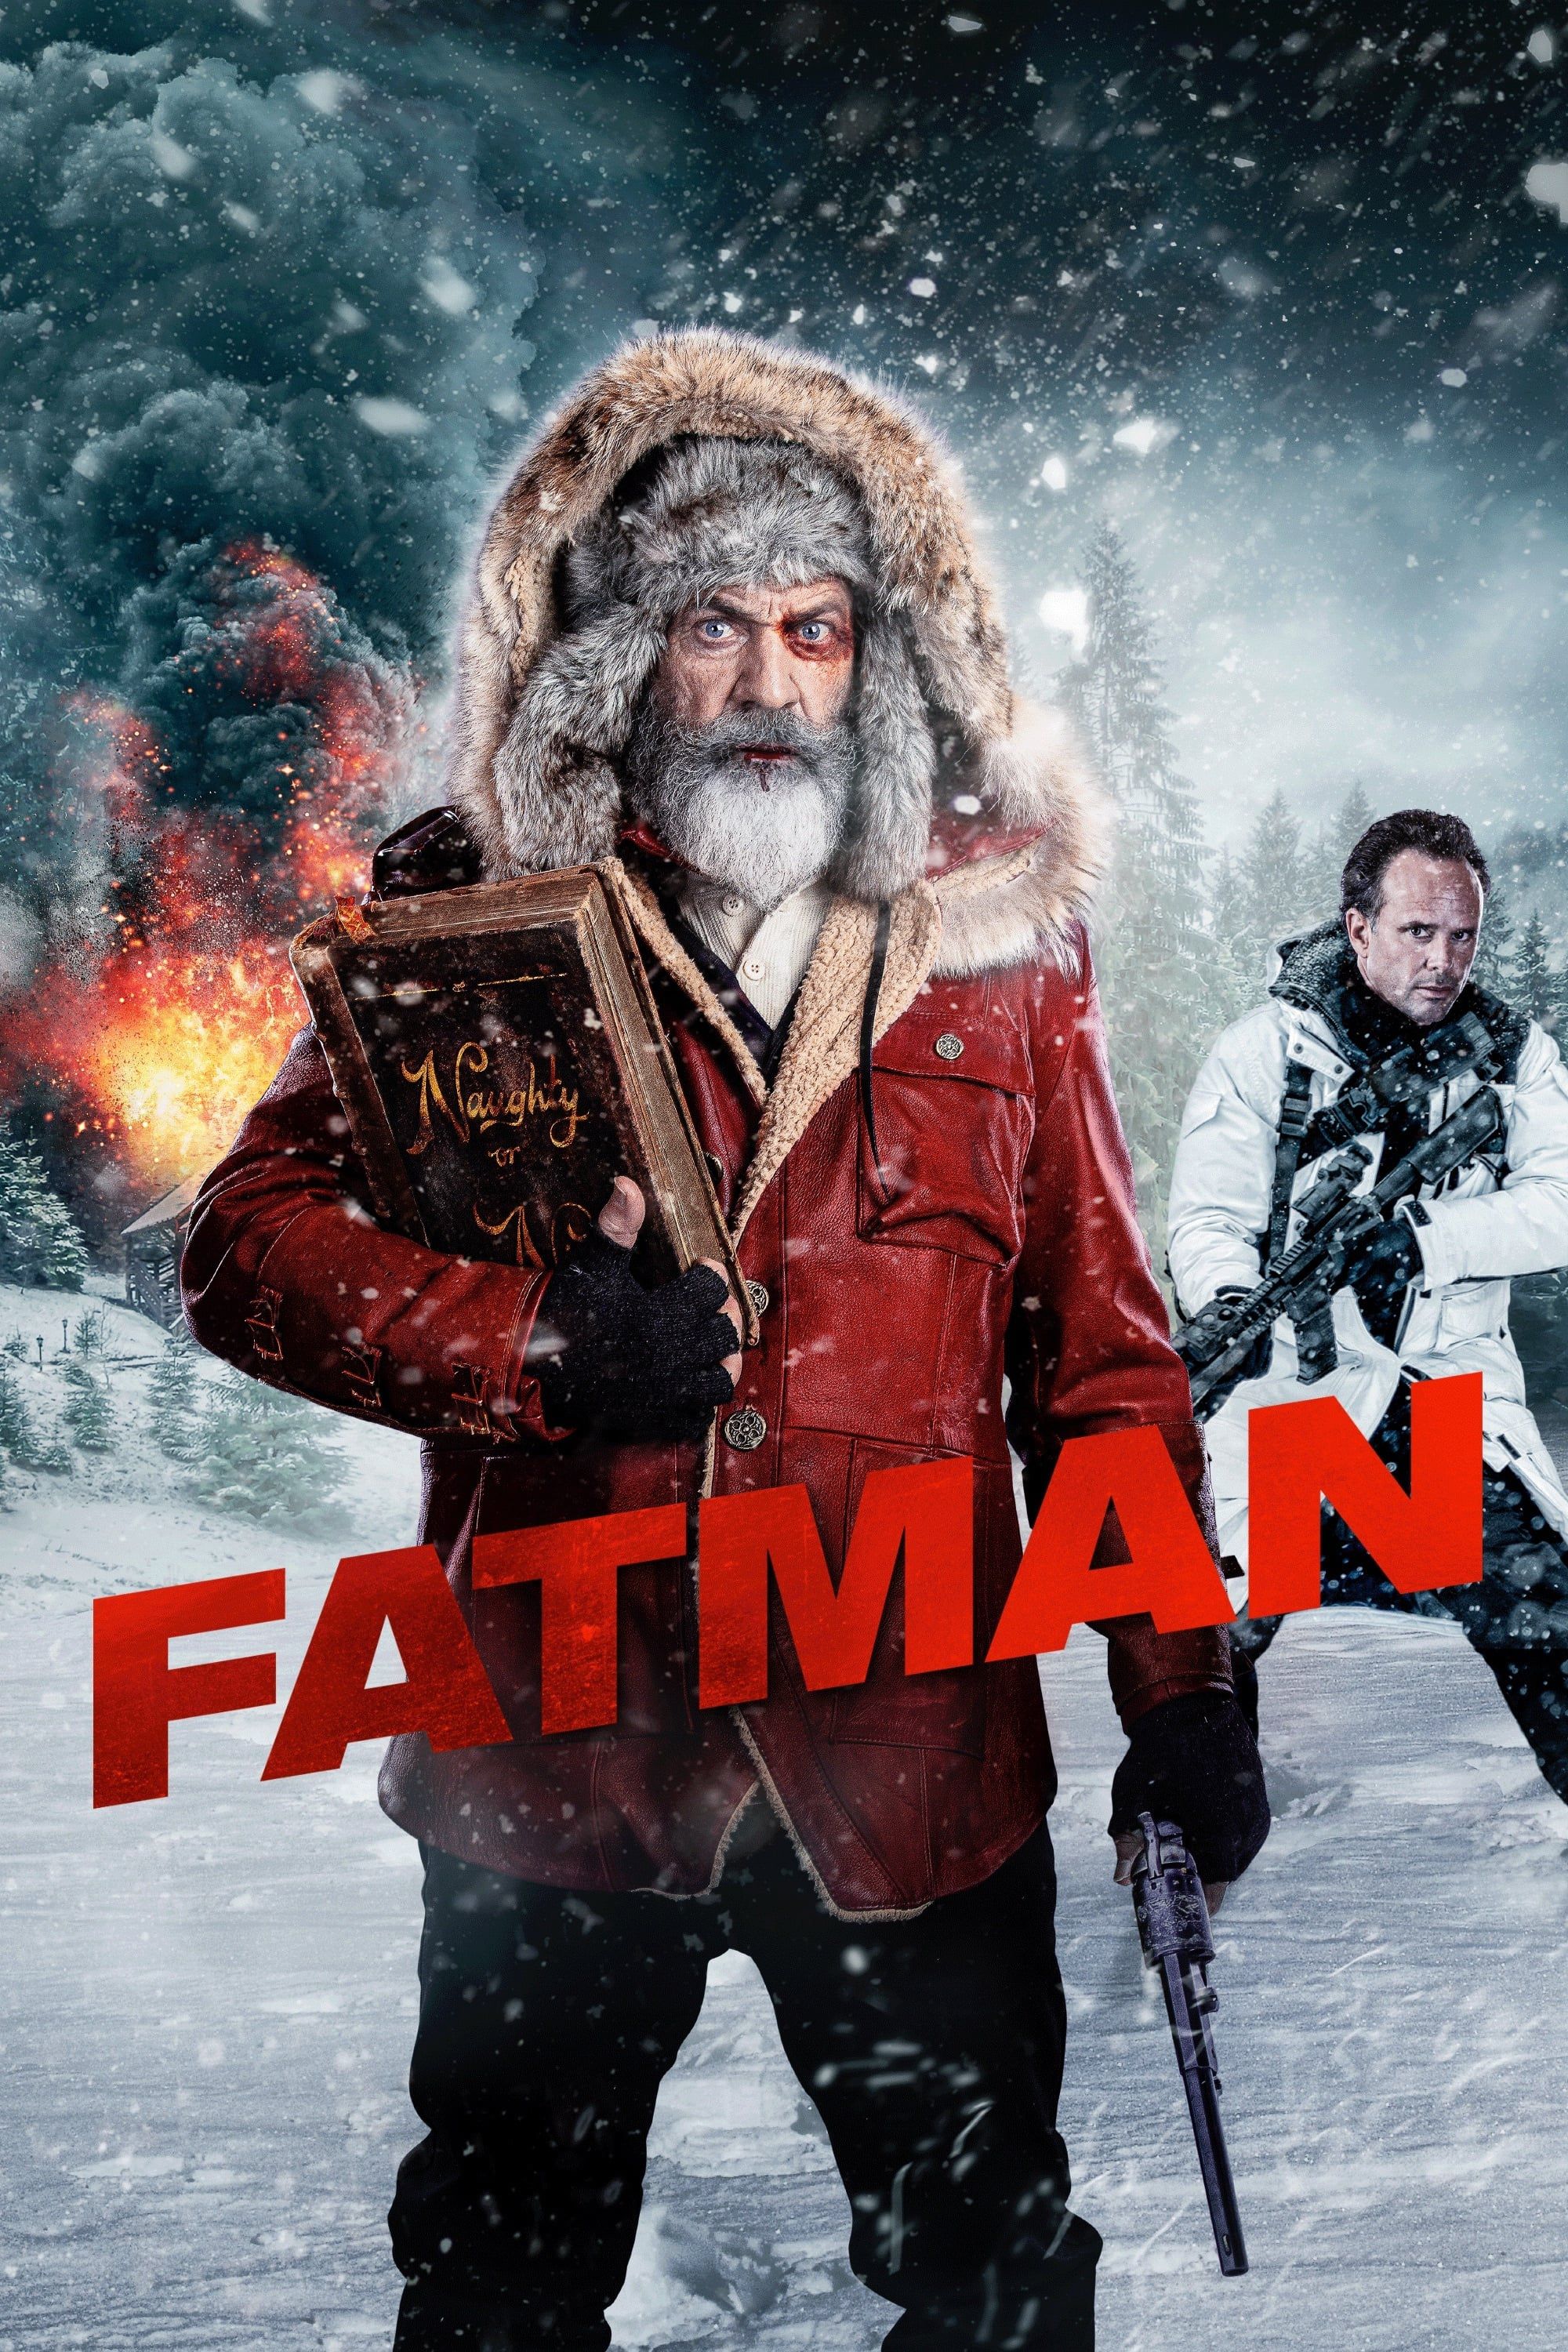 Film Fatman - Film (2020)